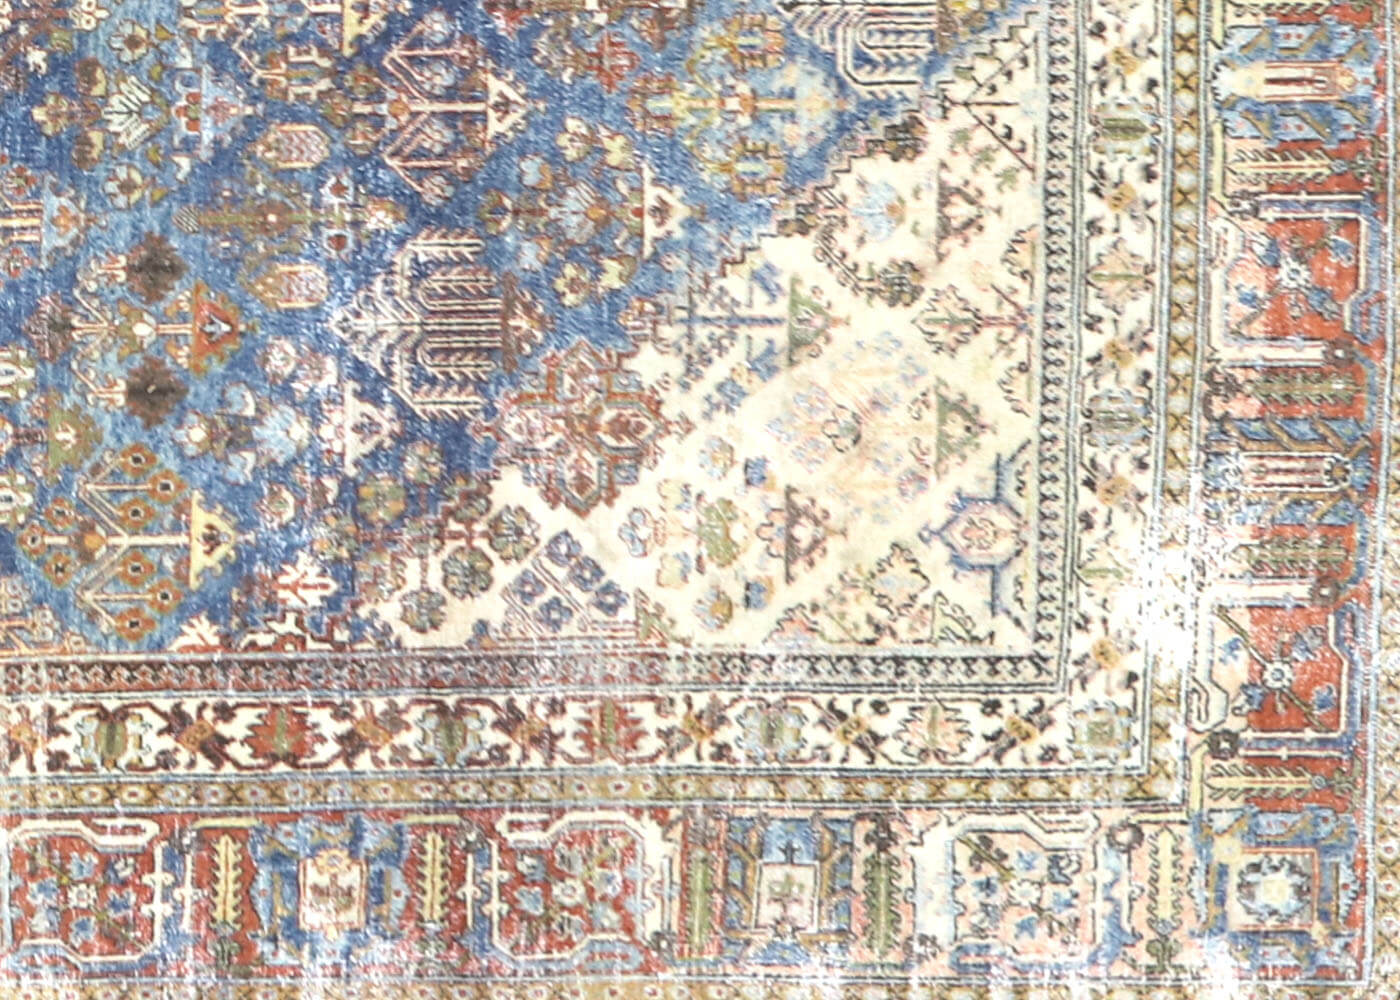 Semi Antique Persian Joshagan Rug - 7'9" x 11'2"